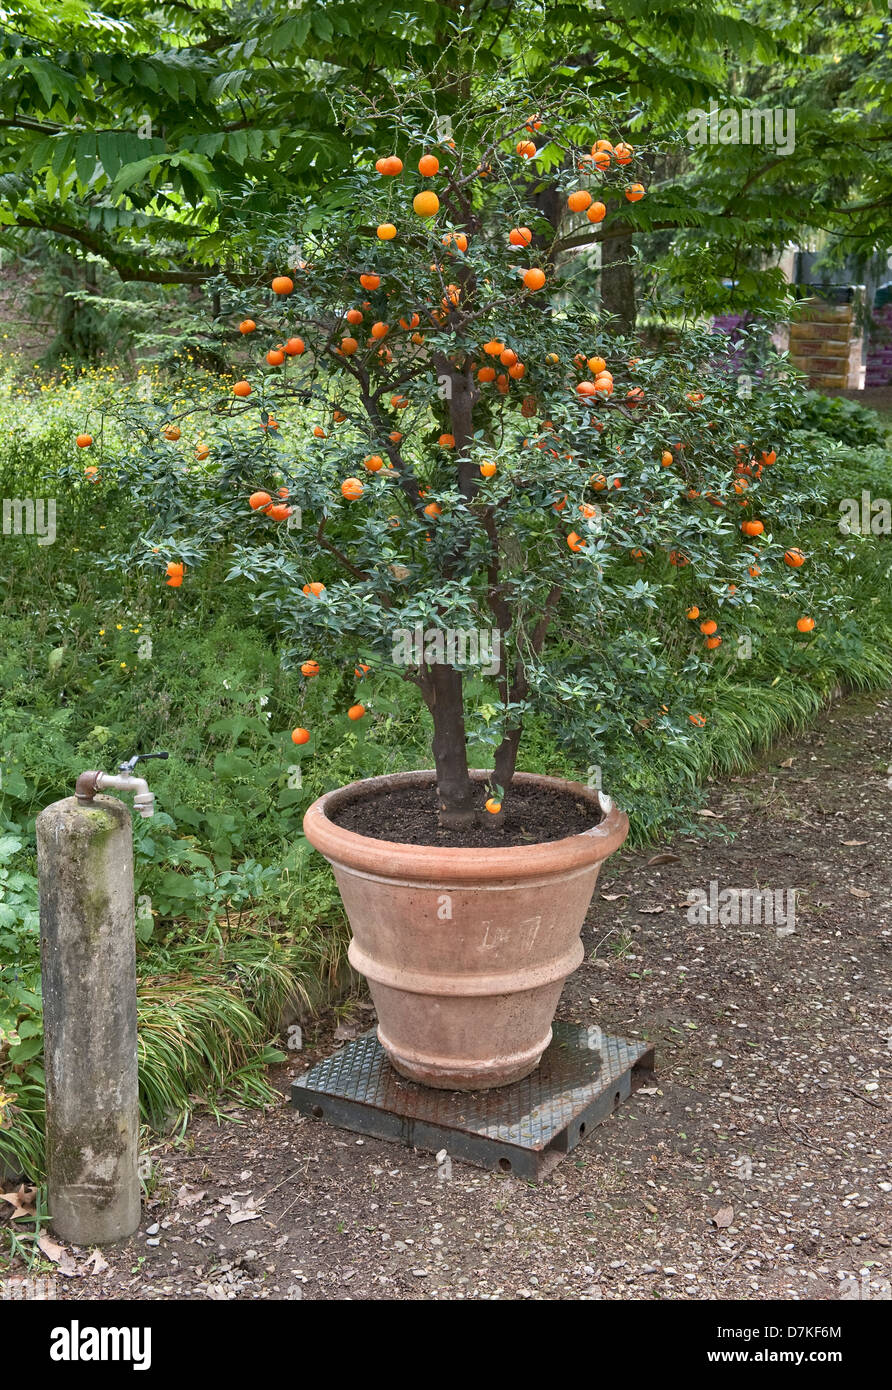 Le c’est quoi donc n22 Un-arbre-citrus-myrtifolia-chinotto-dans-le-jardin-botanique-orto-botanico-di-firenze-florence-italie-d7kf6m